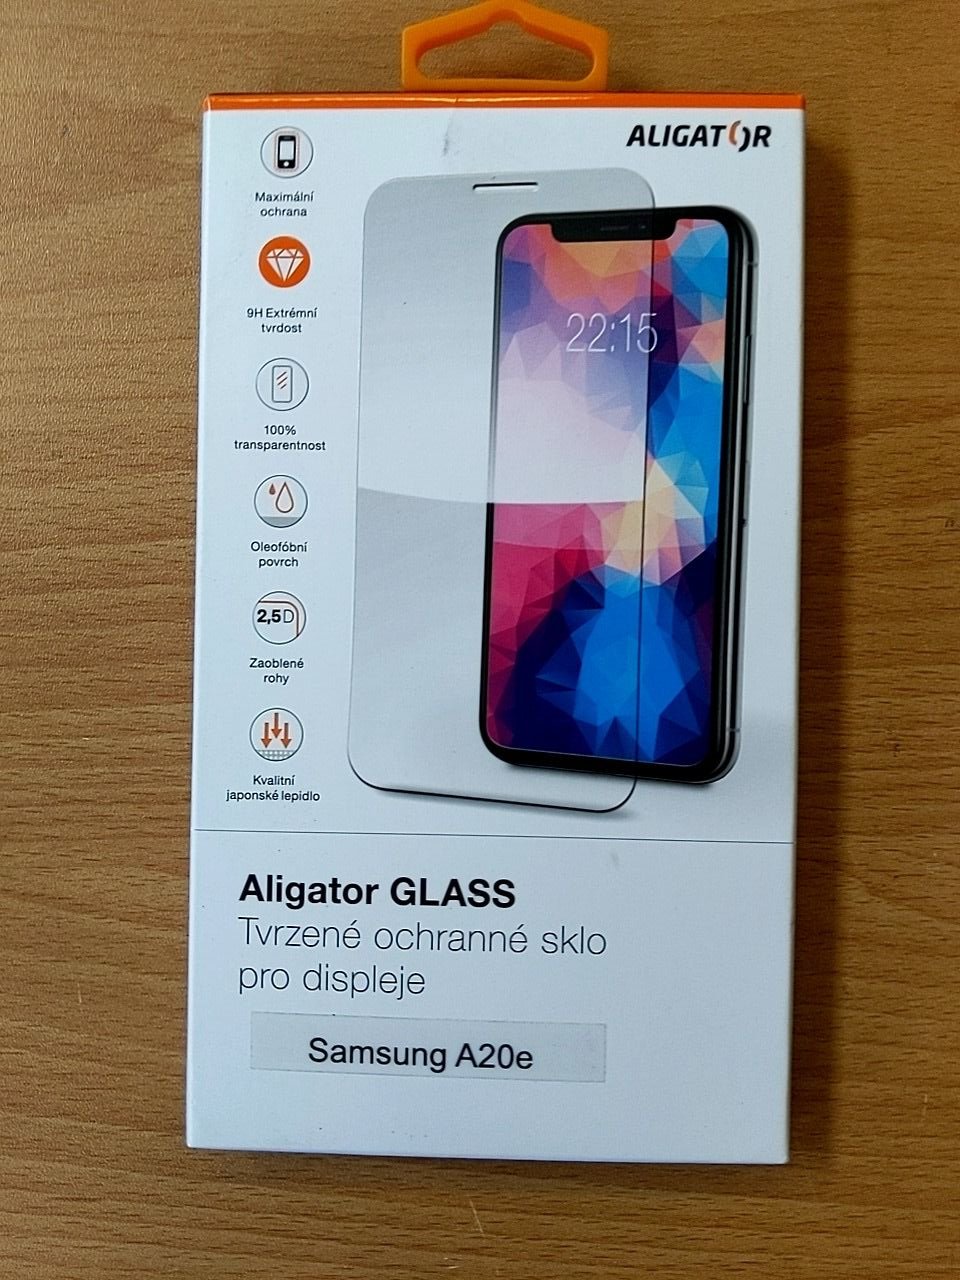 Tvrzené ochranné sklo na displej telefonu Aligator Glass Samsung A20e